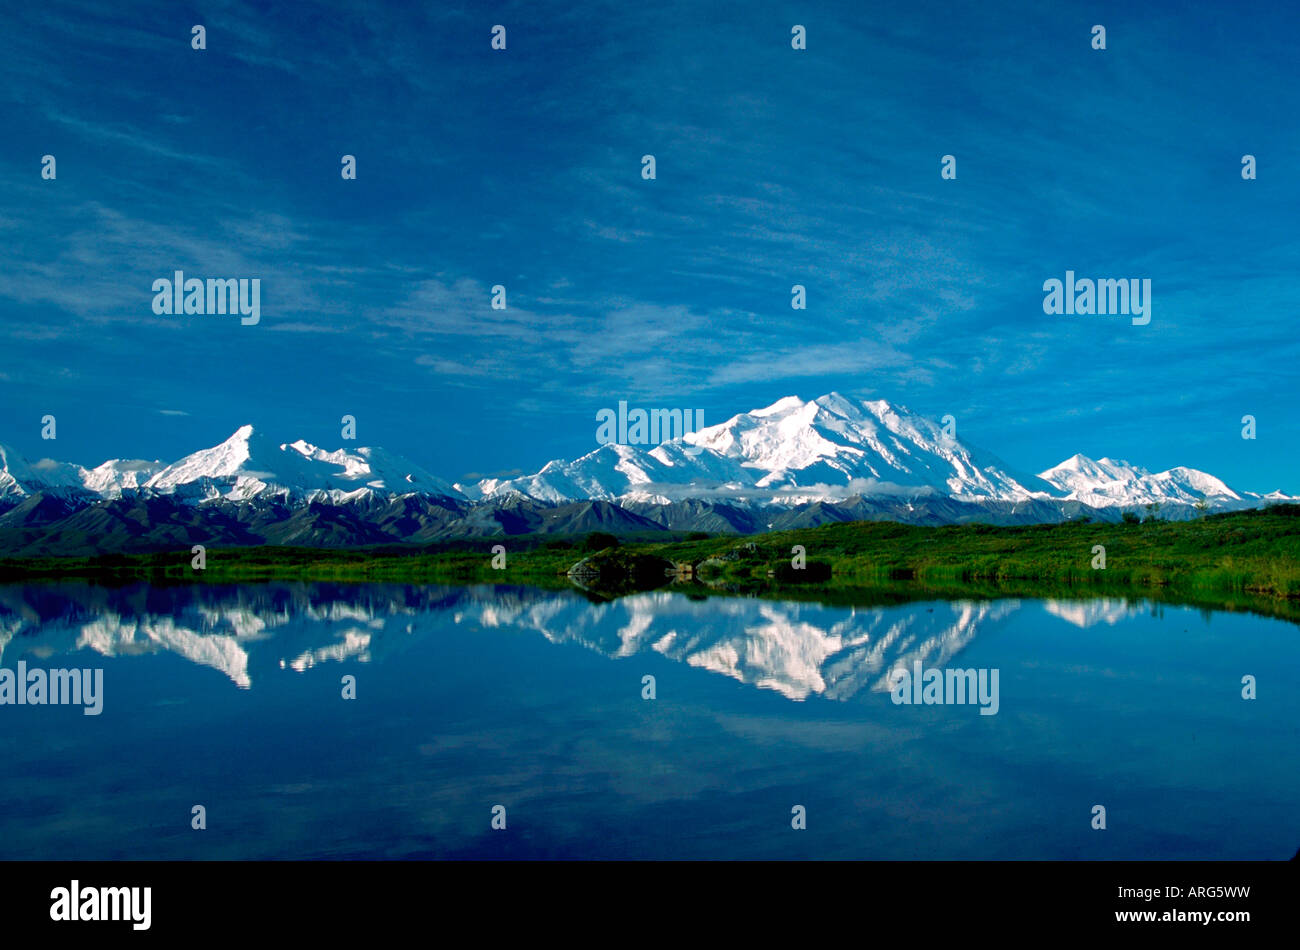 Die Alaska Range mit Reflexion im Tundra Teich große massiv ist Mount McKinley Denali Nationalpark, Alaska Stockfoto